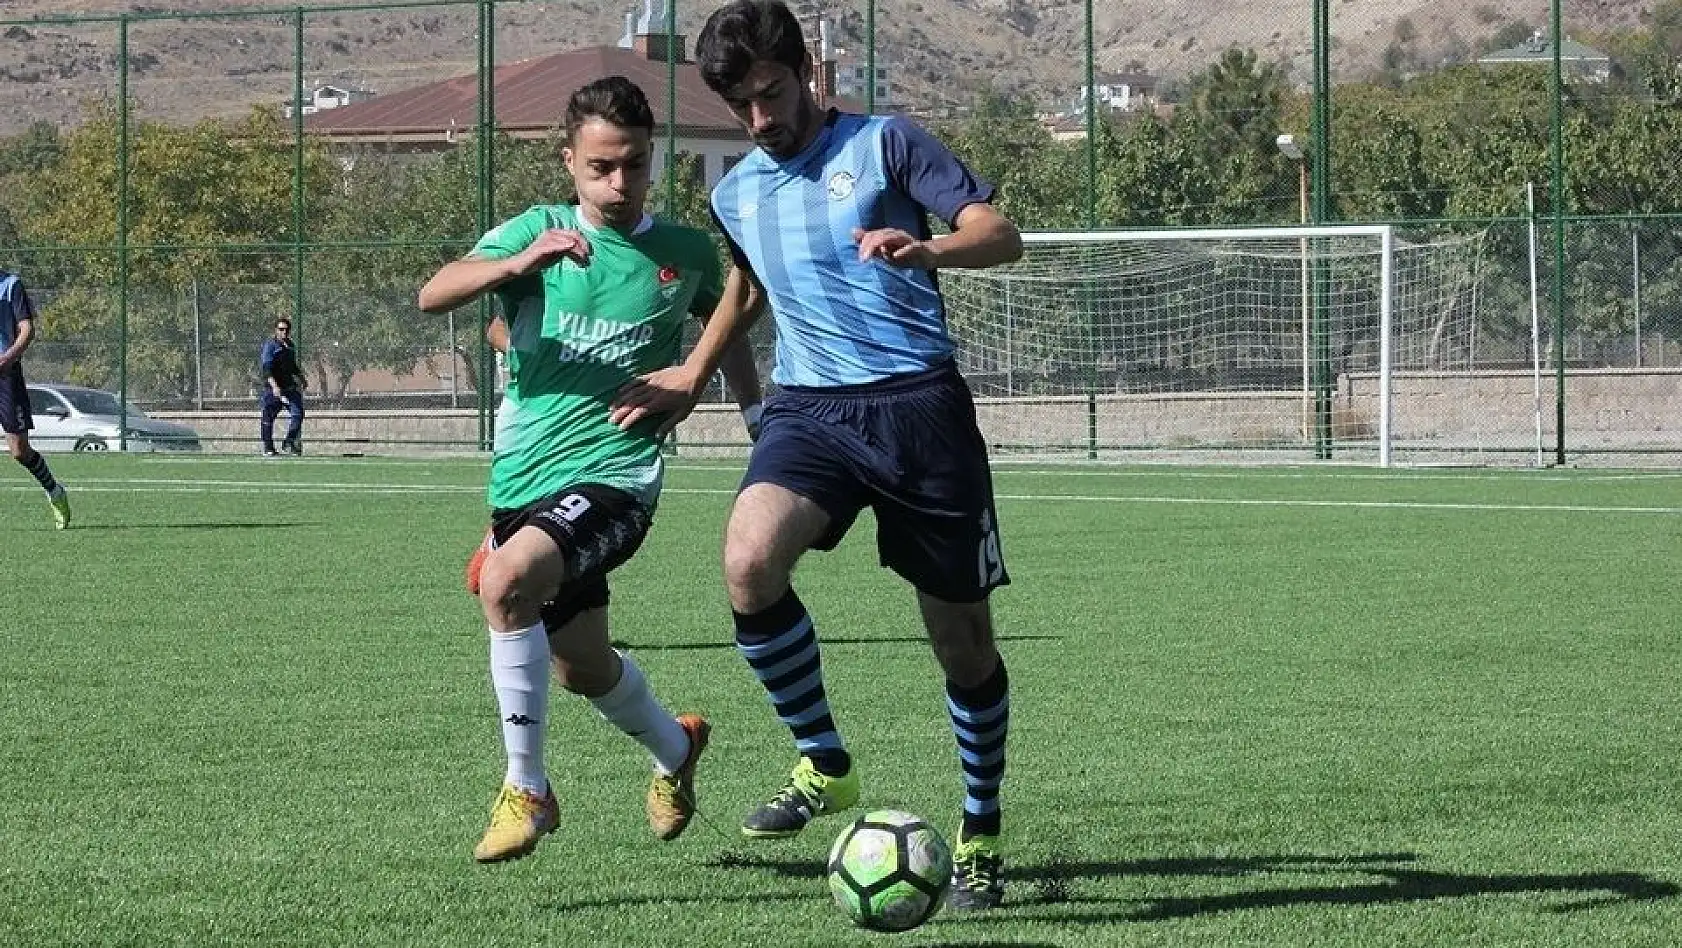 Suriyeli futbolcu, Kayseri'de gol kralı olma yolunda